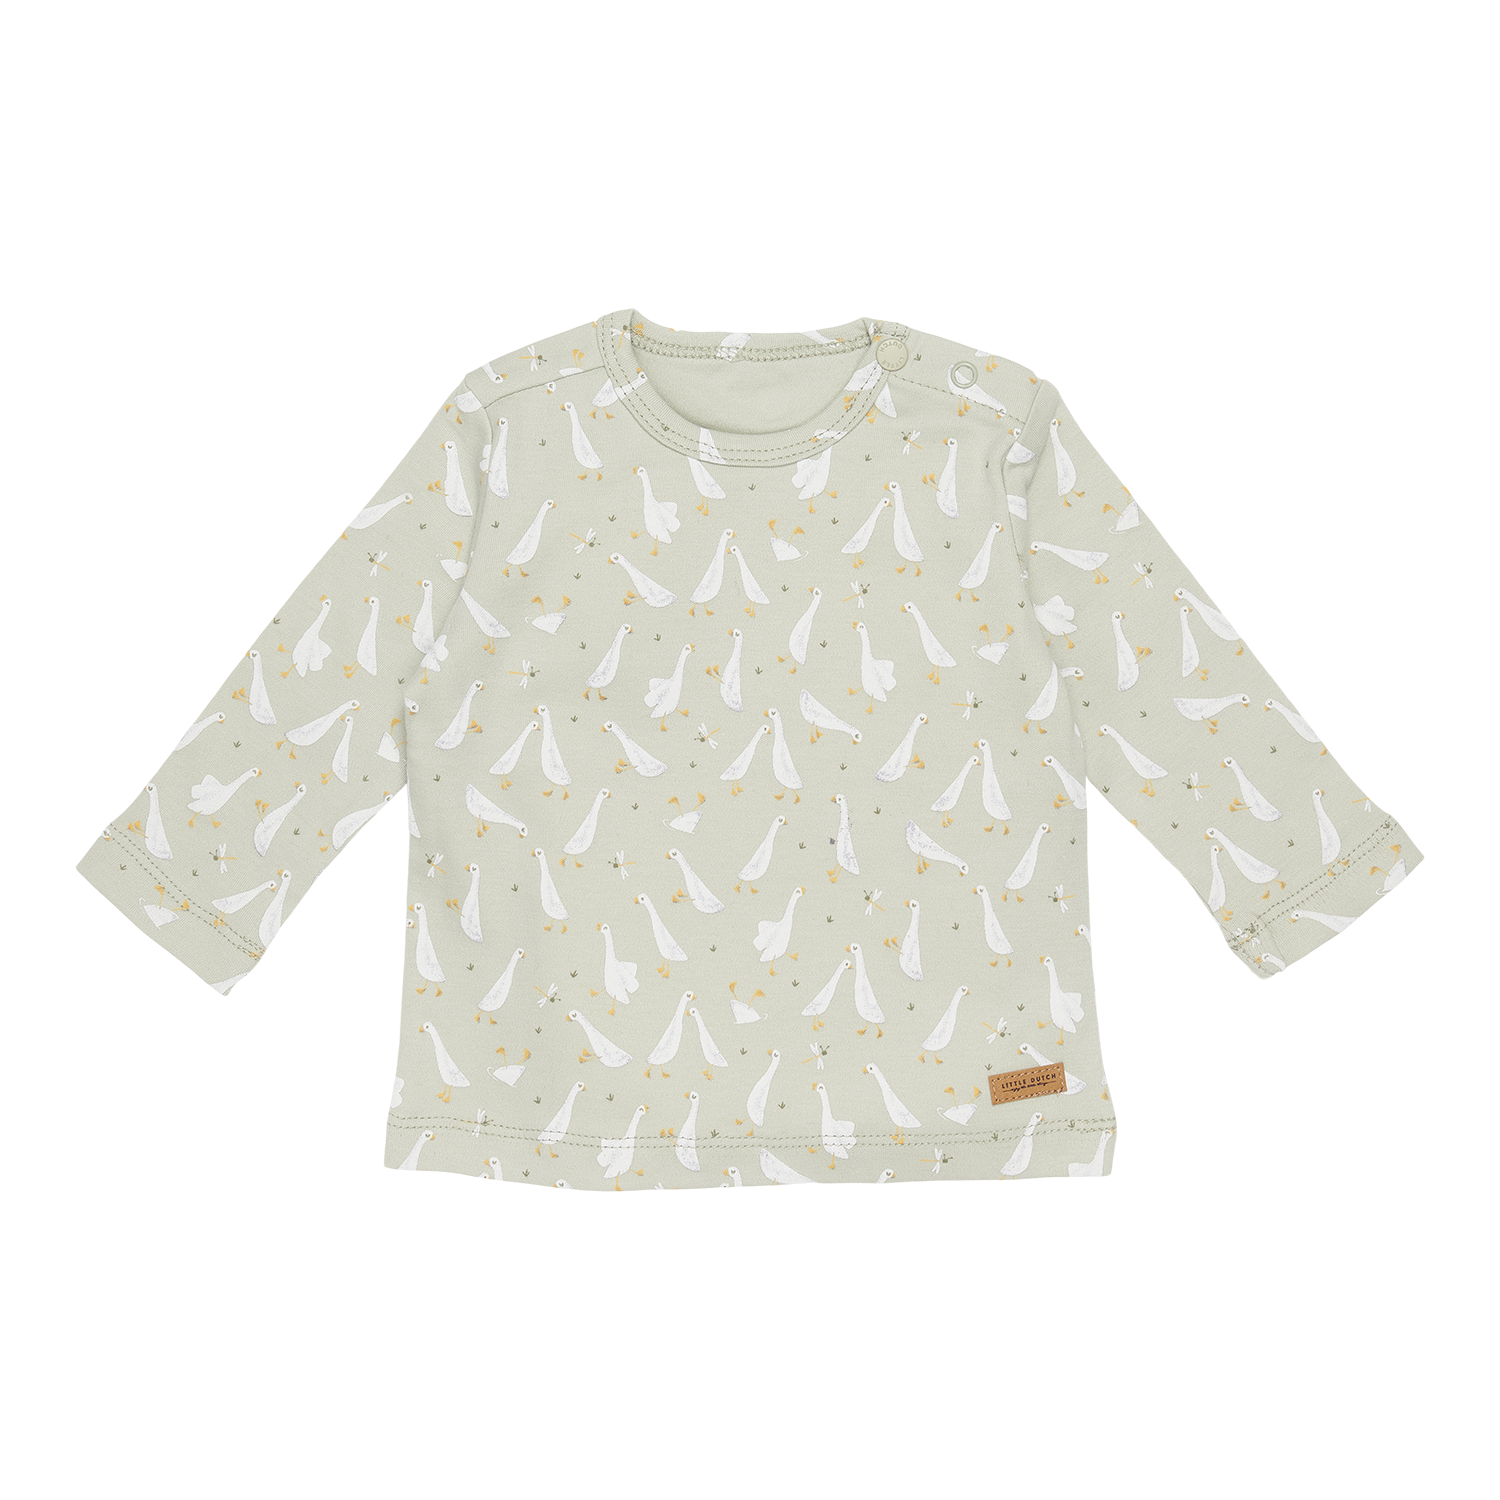 Long Sleeve Shirt / Langarmshirt Little Goose / Kleine Gans mint (Gr. 86)